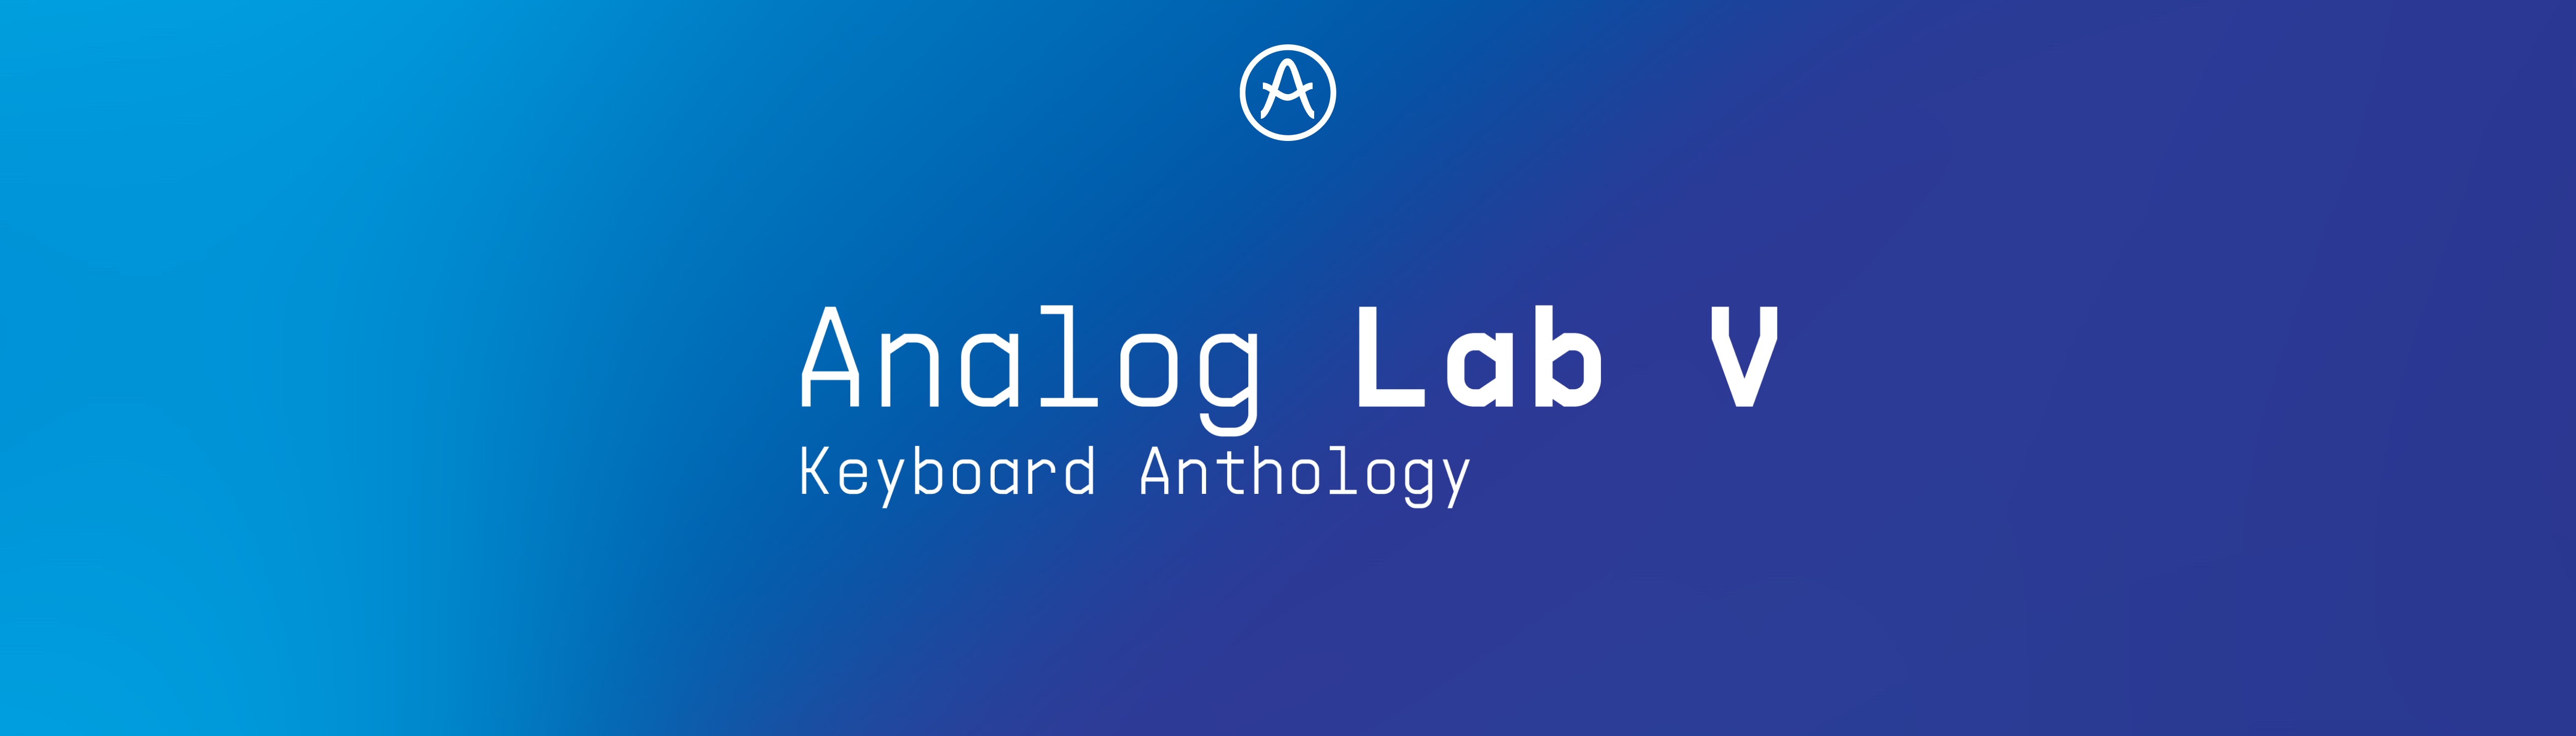 downloading Arturia Analog lab V